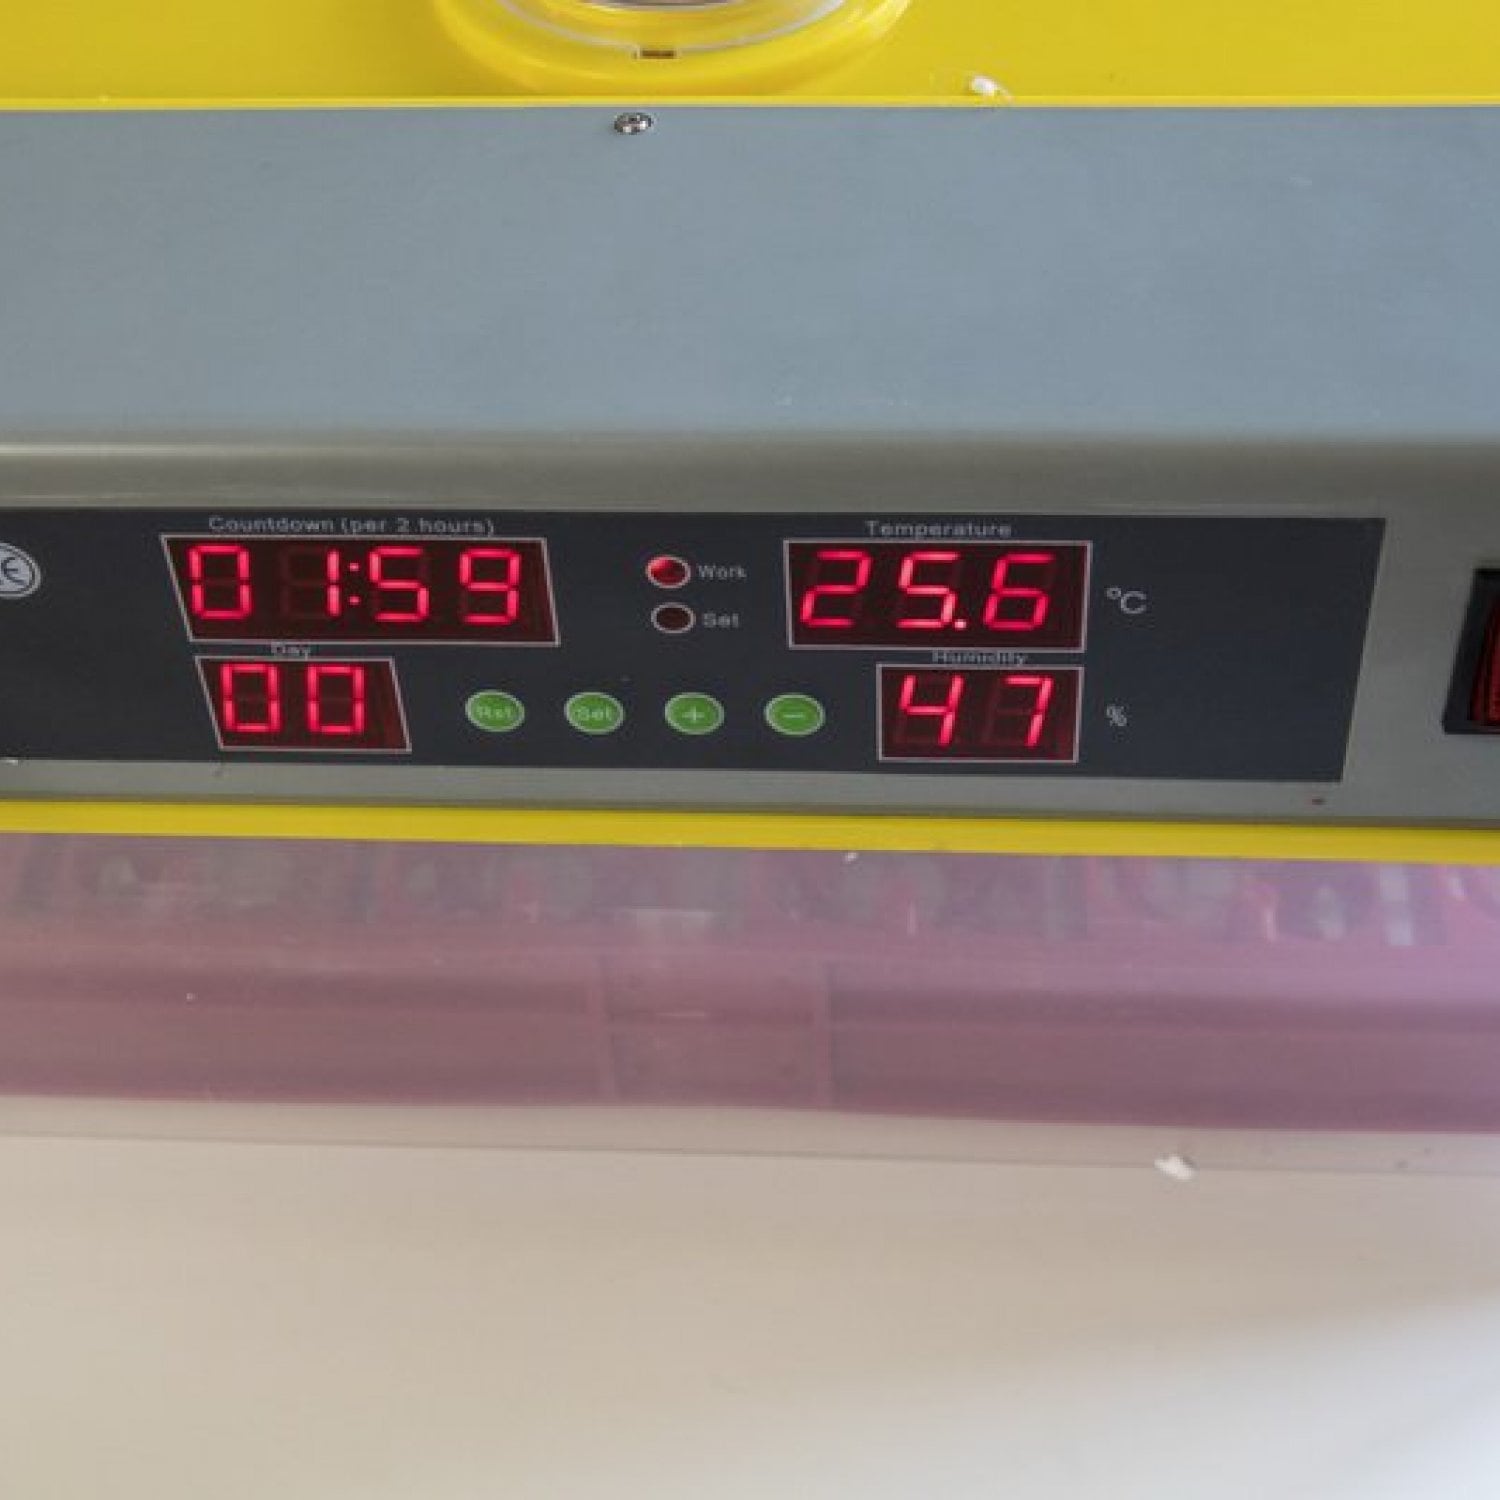 Инкубатор для яиц автоматический И-36